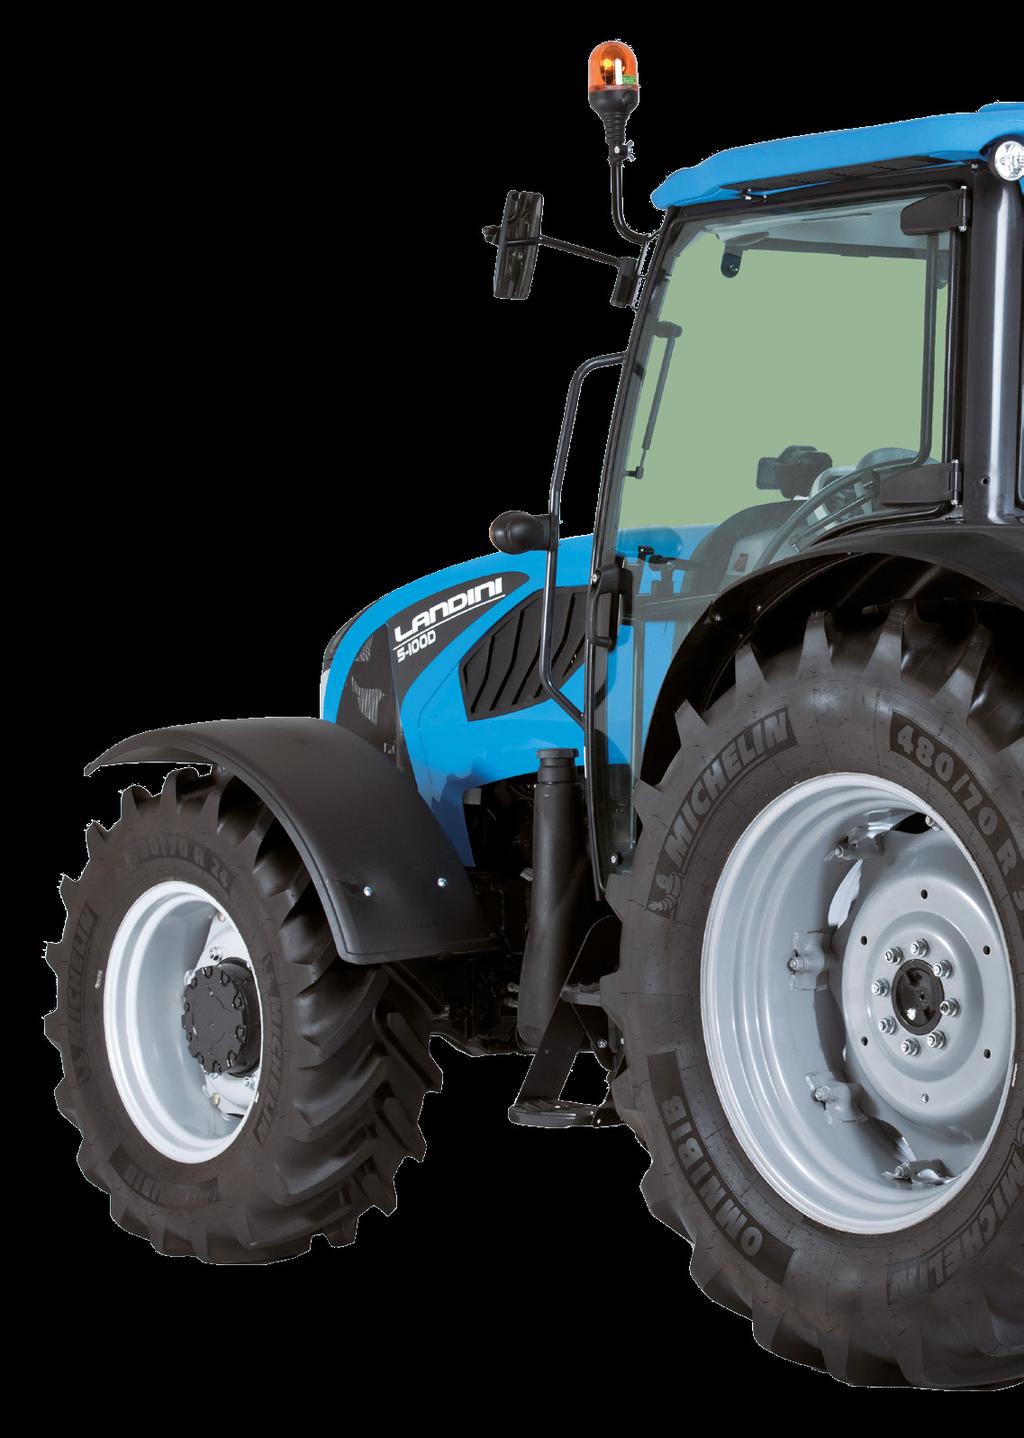 műszerfalpanel a kormánykerékkel együtt dönthető, így a gépkezelő folyamatosan figyelheti a traktor működési állapotát (E ábra).